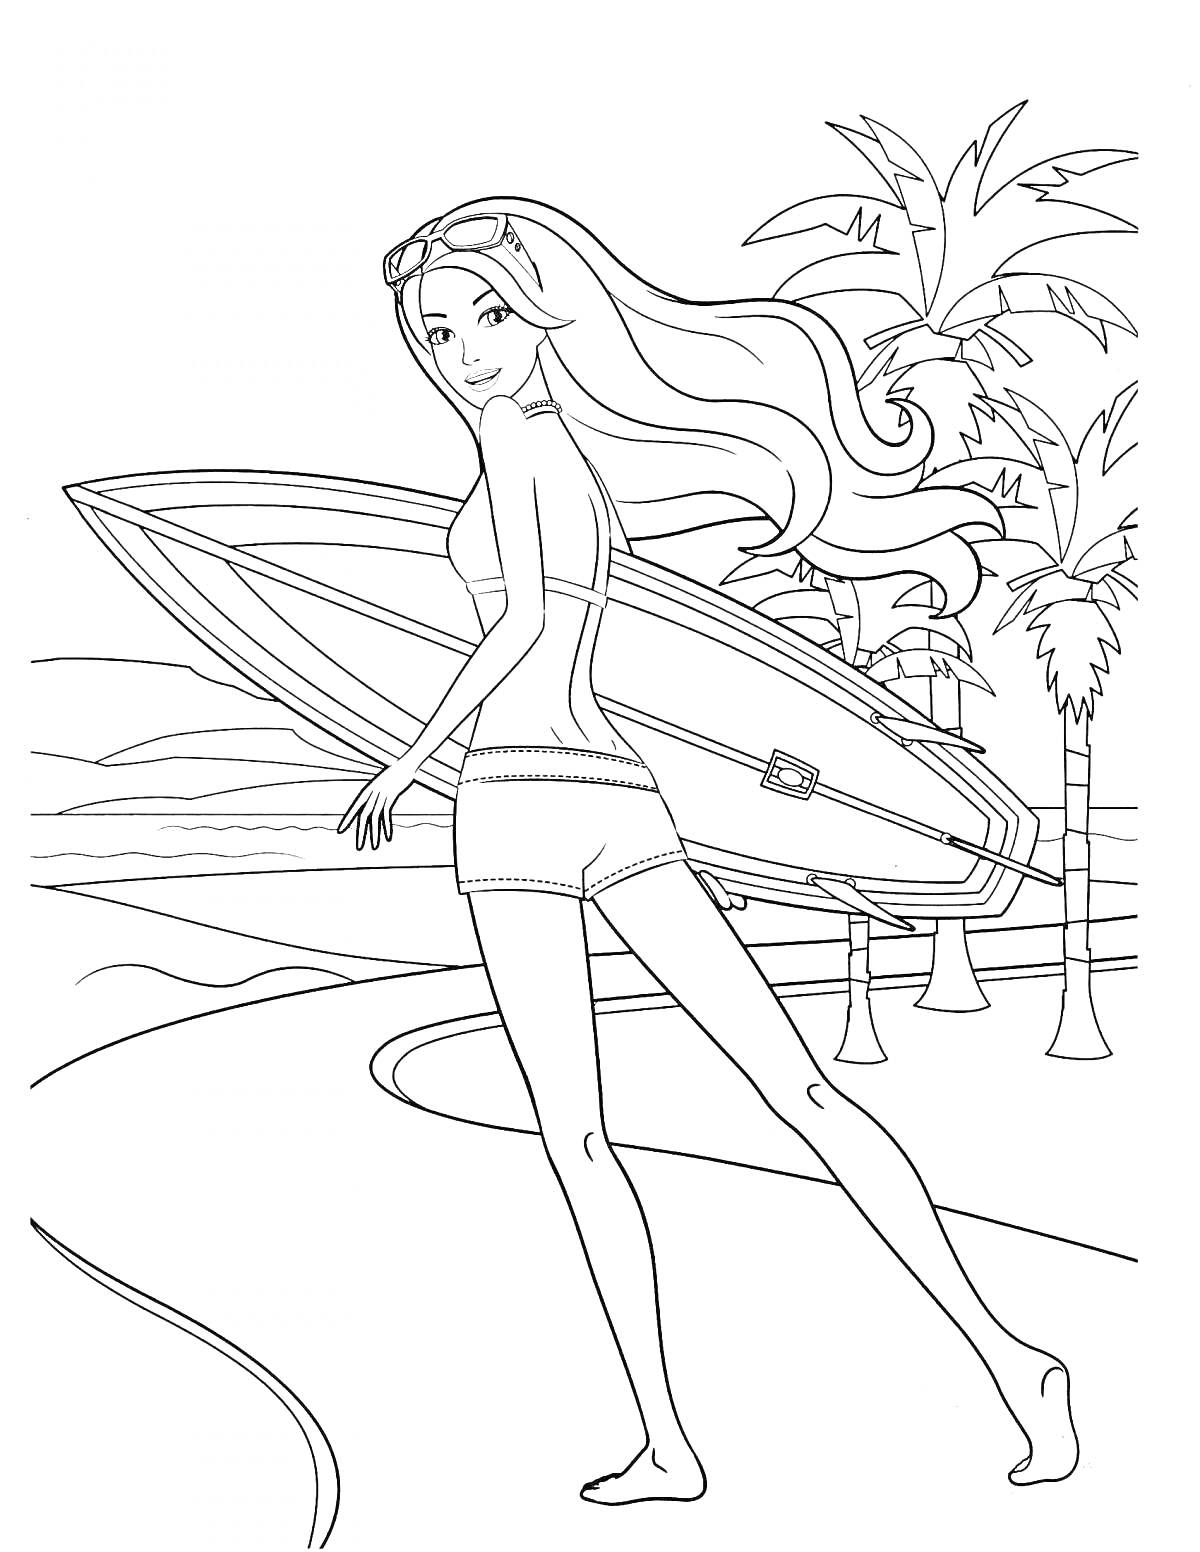 Раскраска Девочка с длинными волосами несет доску для серфинга на пляже с пальмами